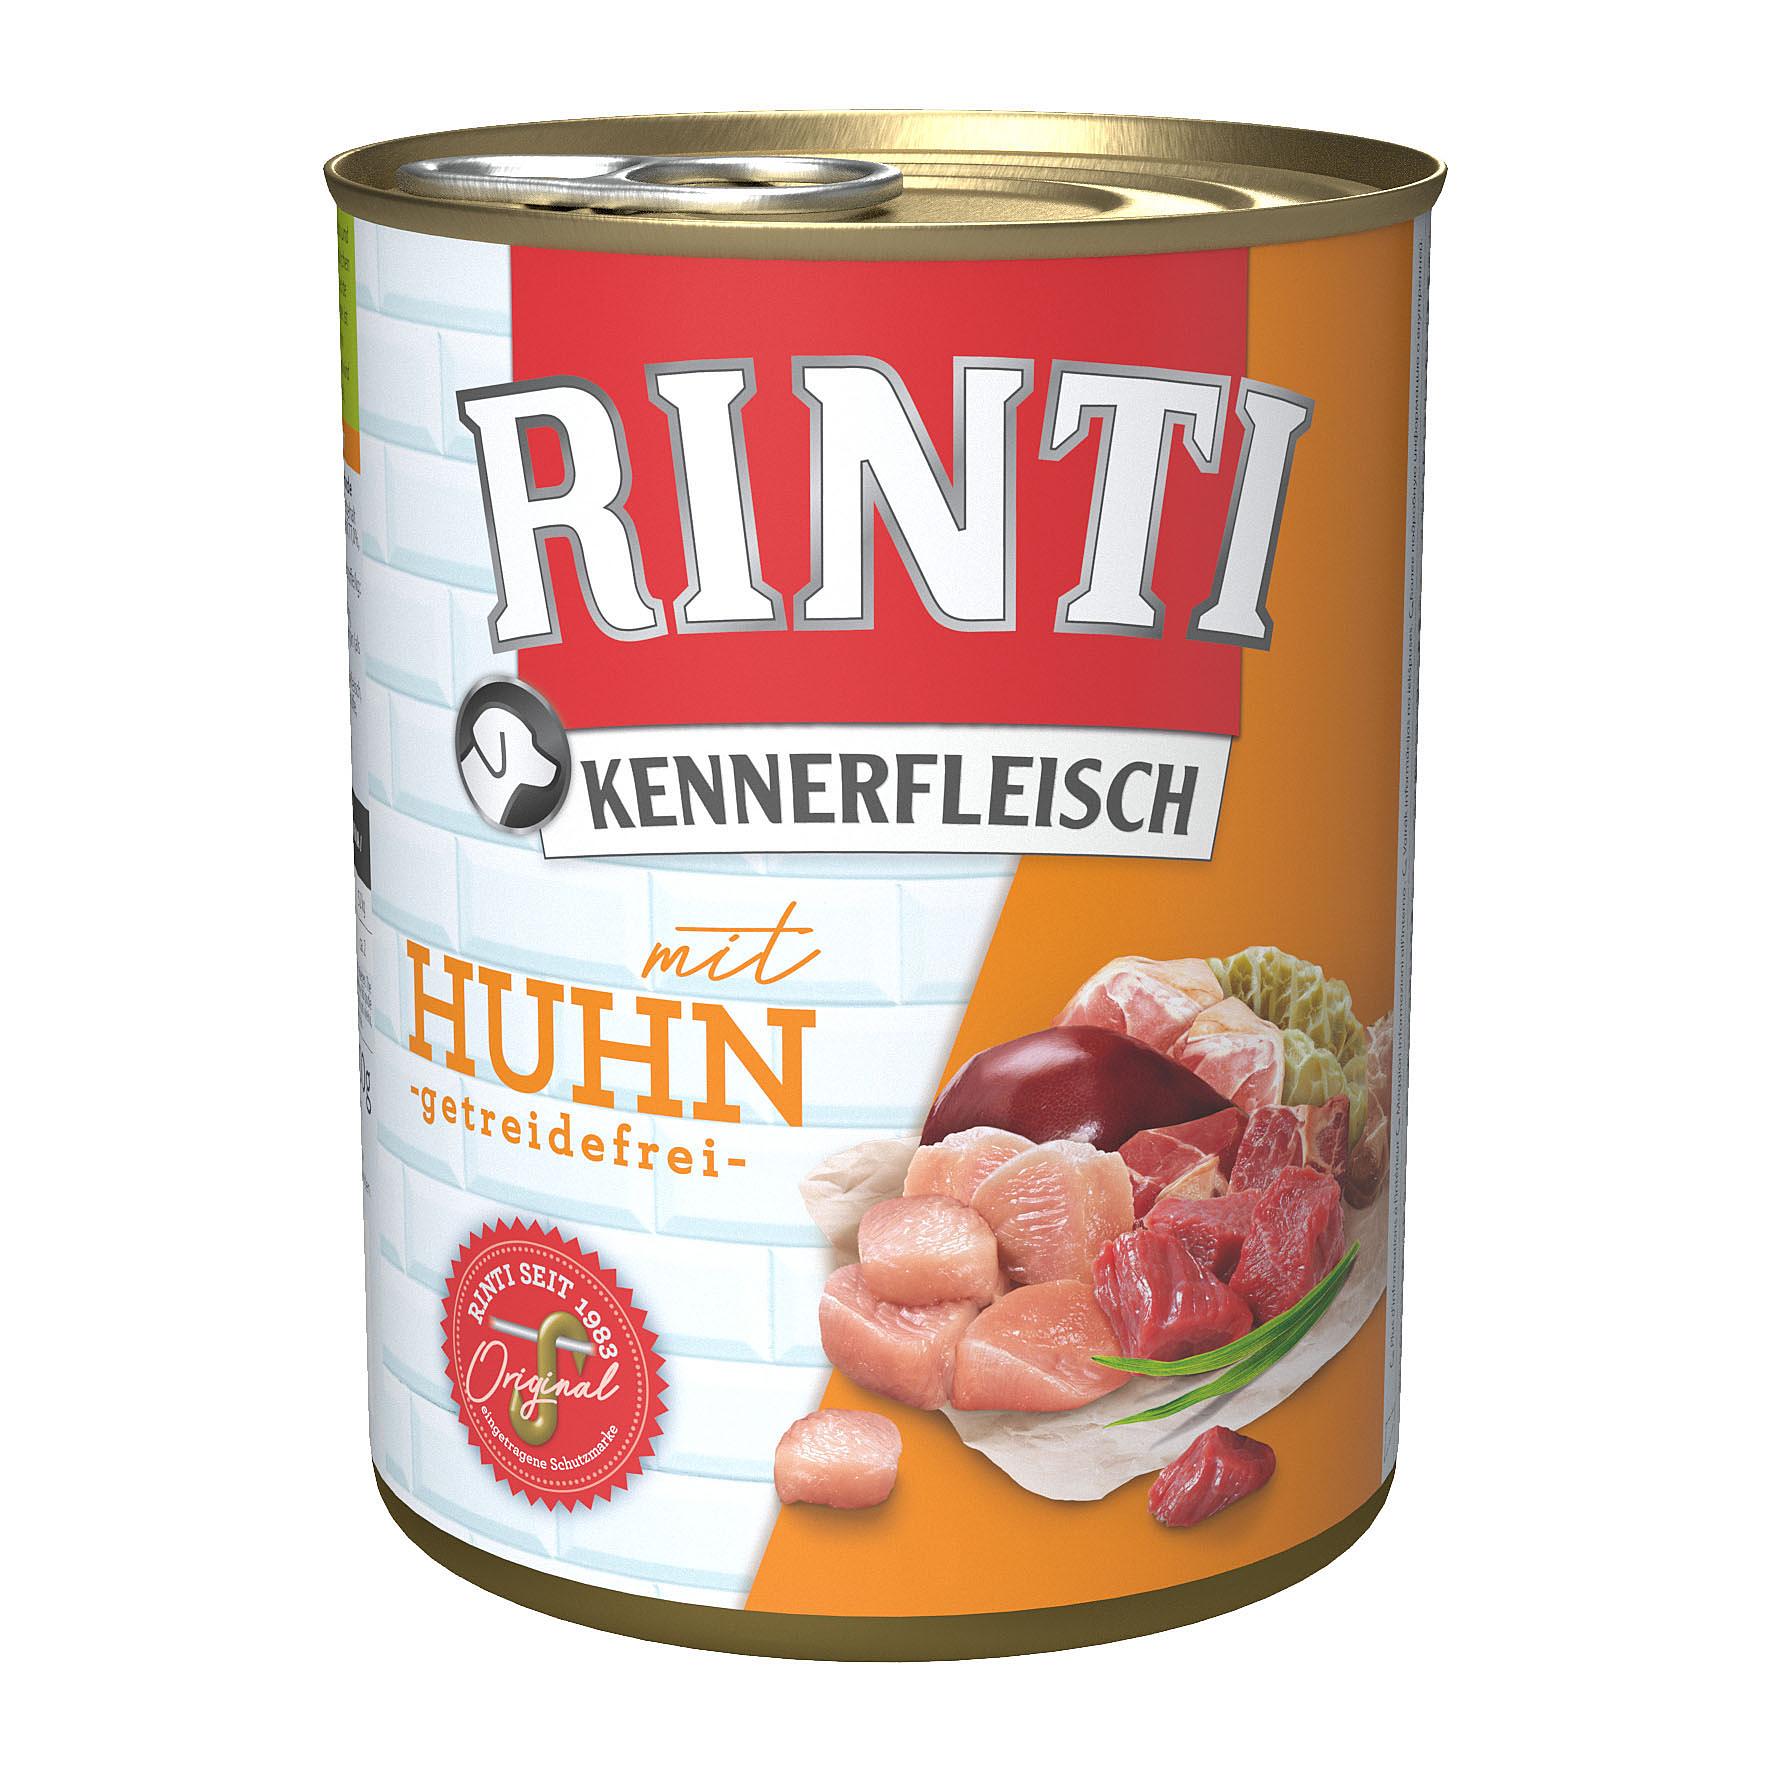 Rinti Kennerfleisch, 800g (Boîte)